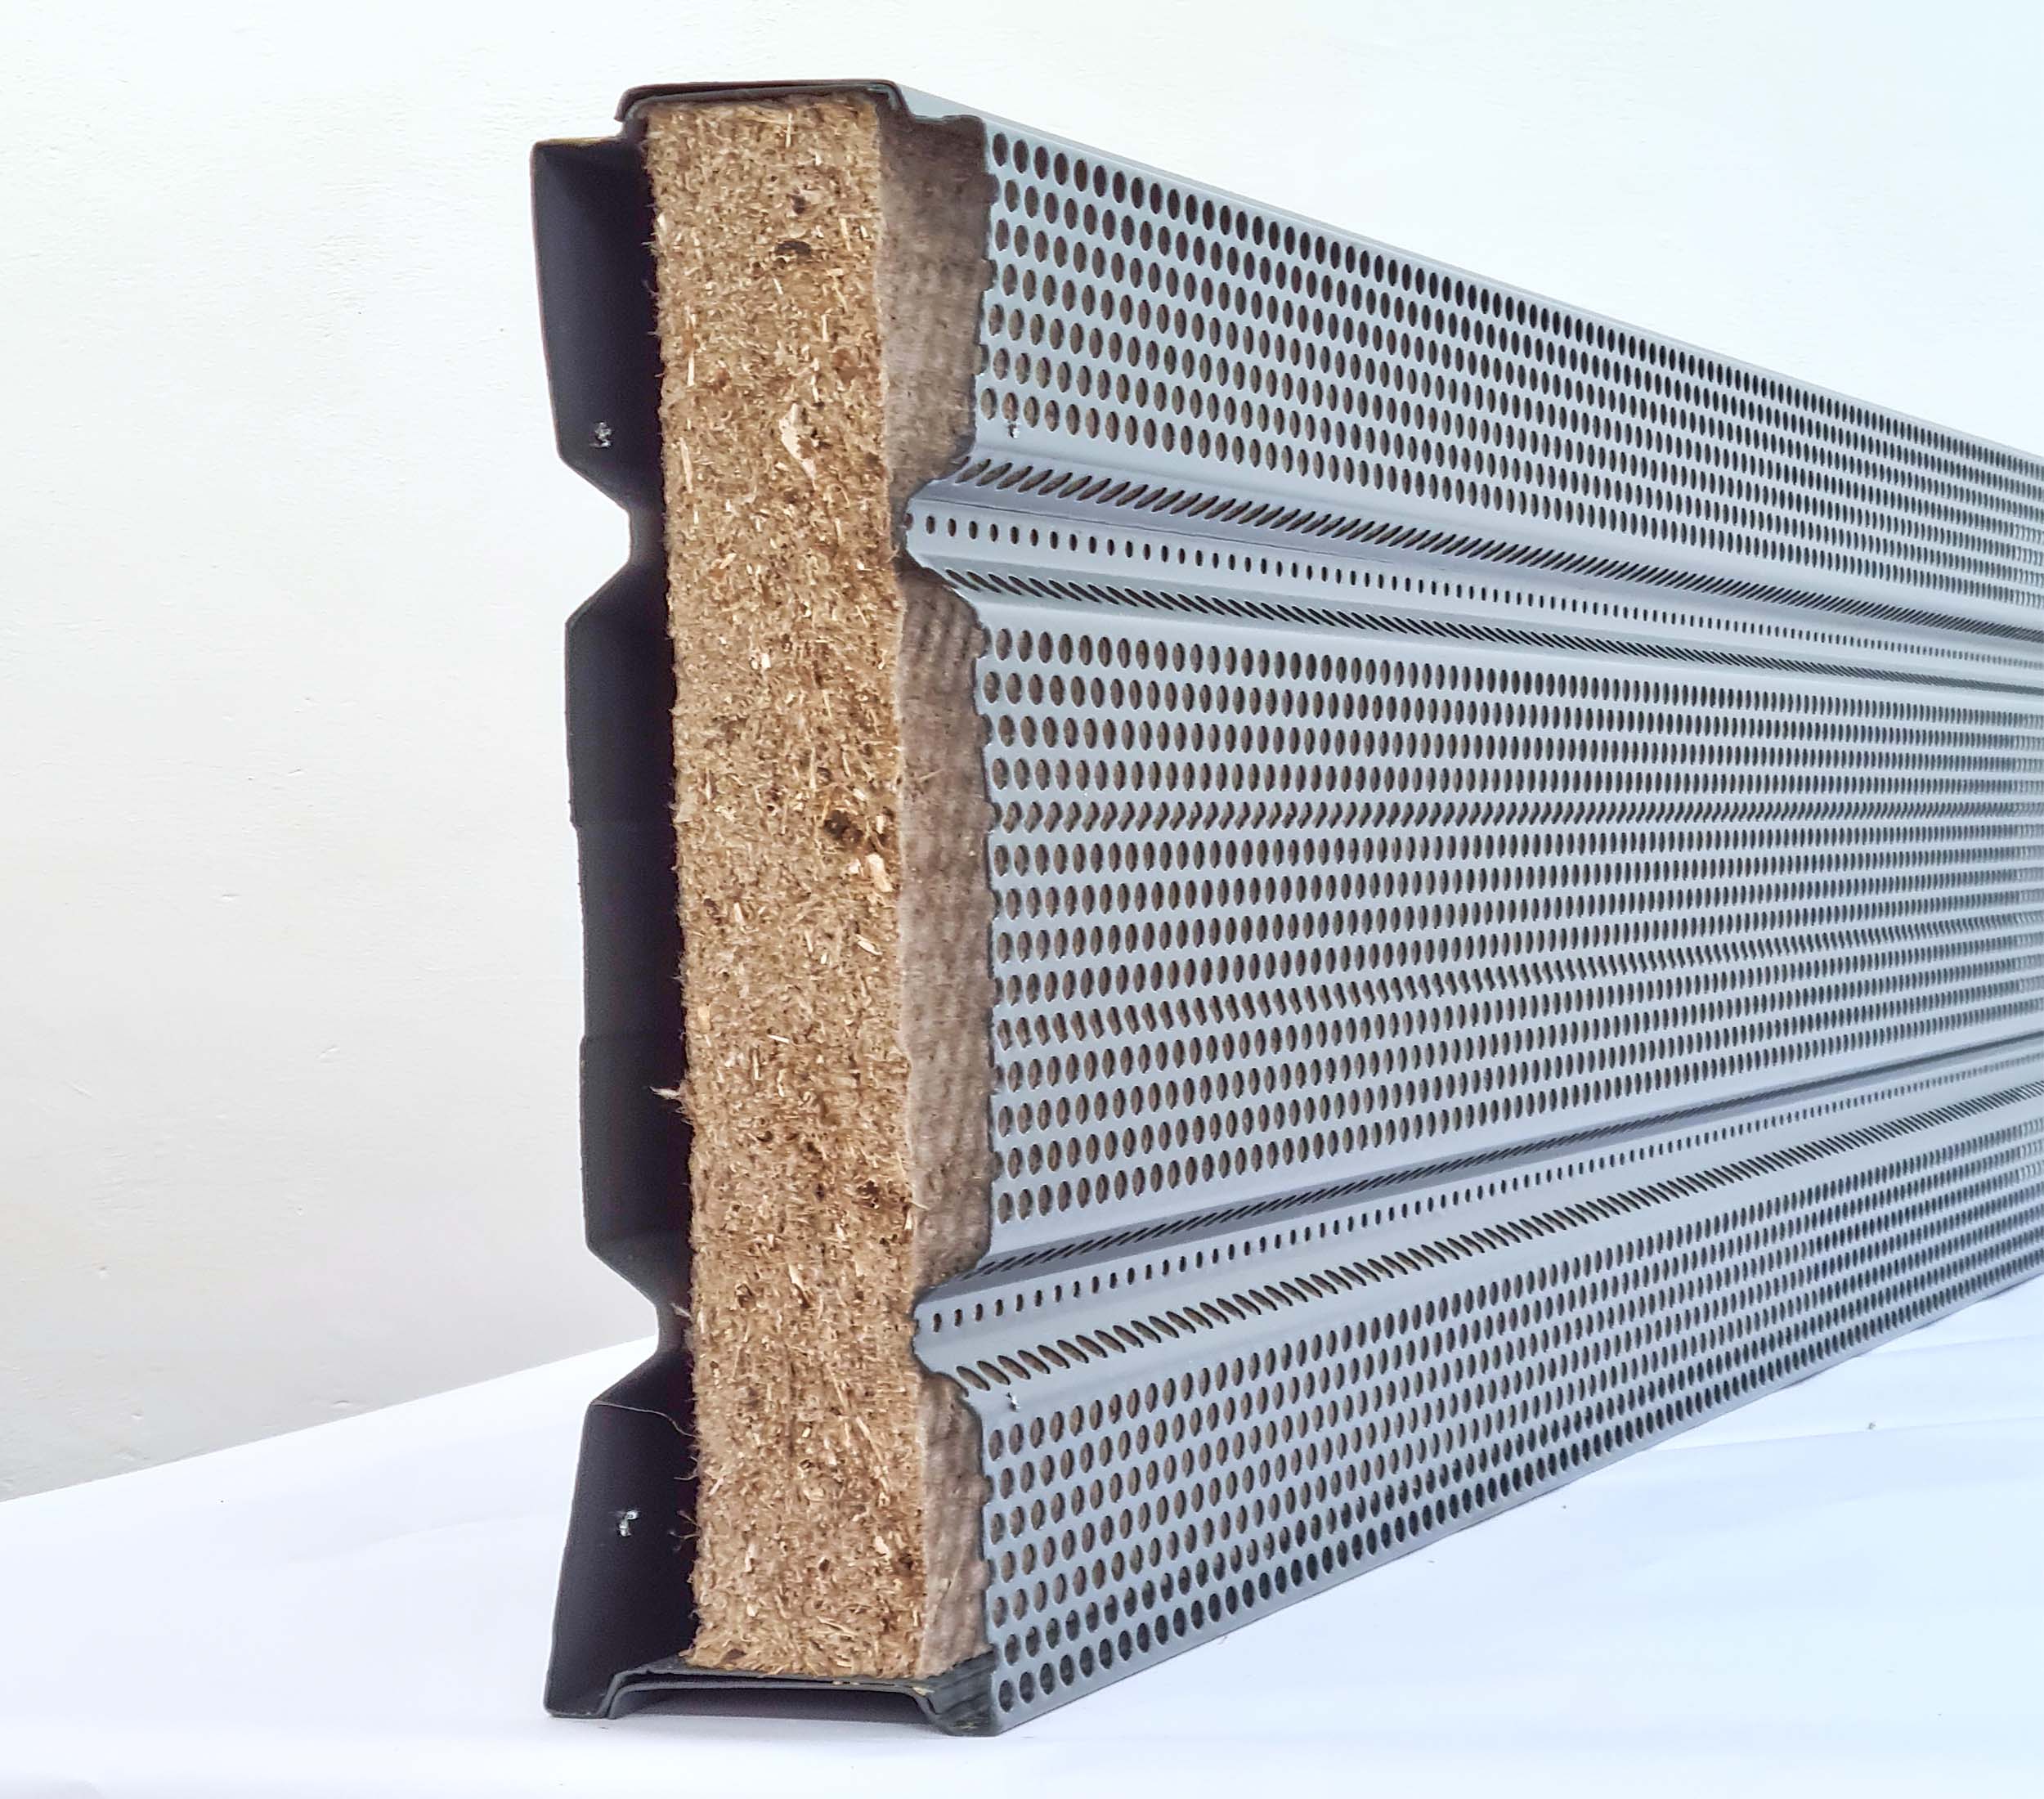 In den Canwool-Lärmschutz-Elementen werden umweltfreundliche Hanf-Platten statt Mineralwolle-Inlays verwendet. Foto: Geosystem GBK GmbH